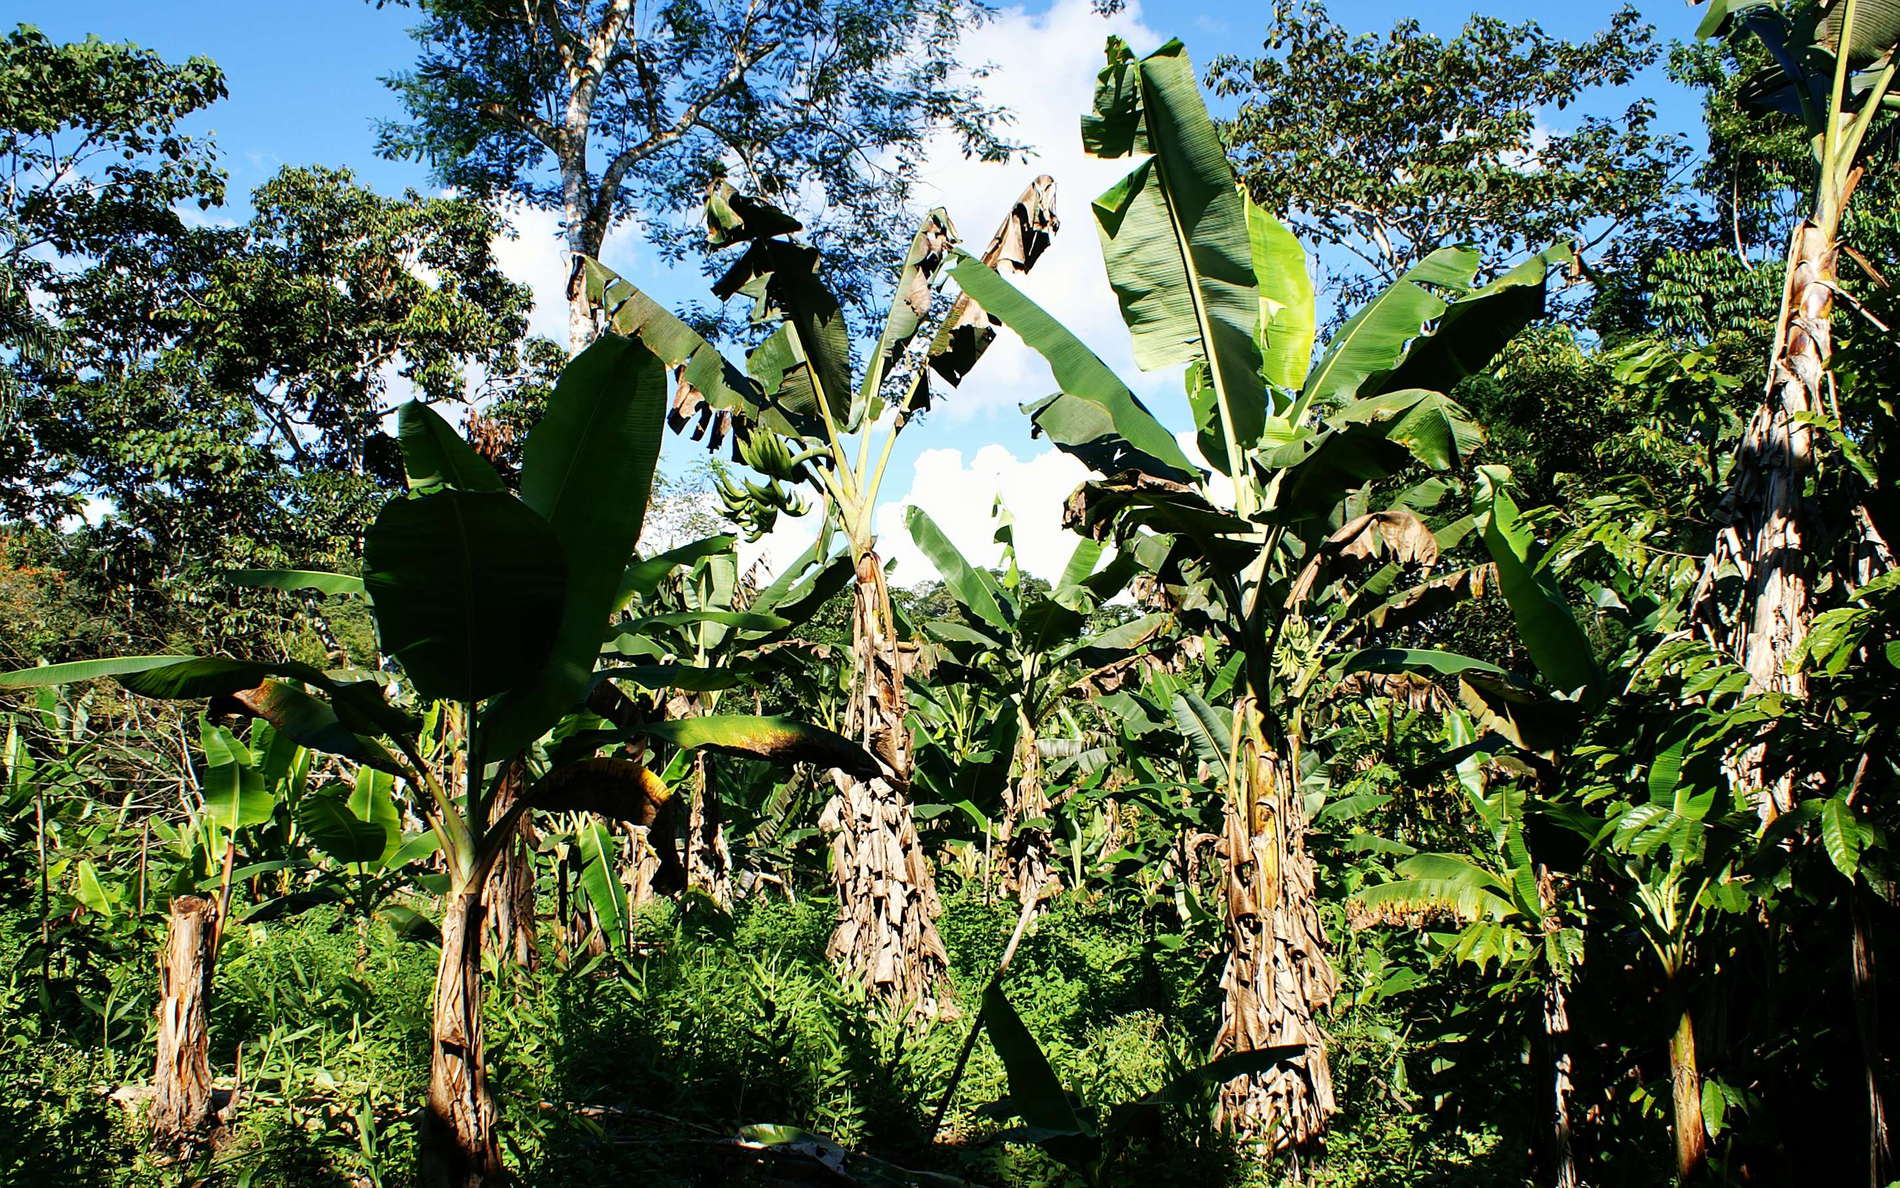 Tena  |  Banana cultivation